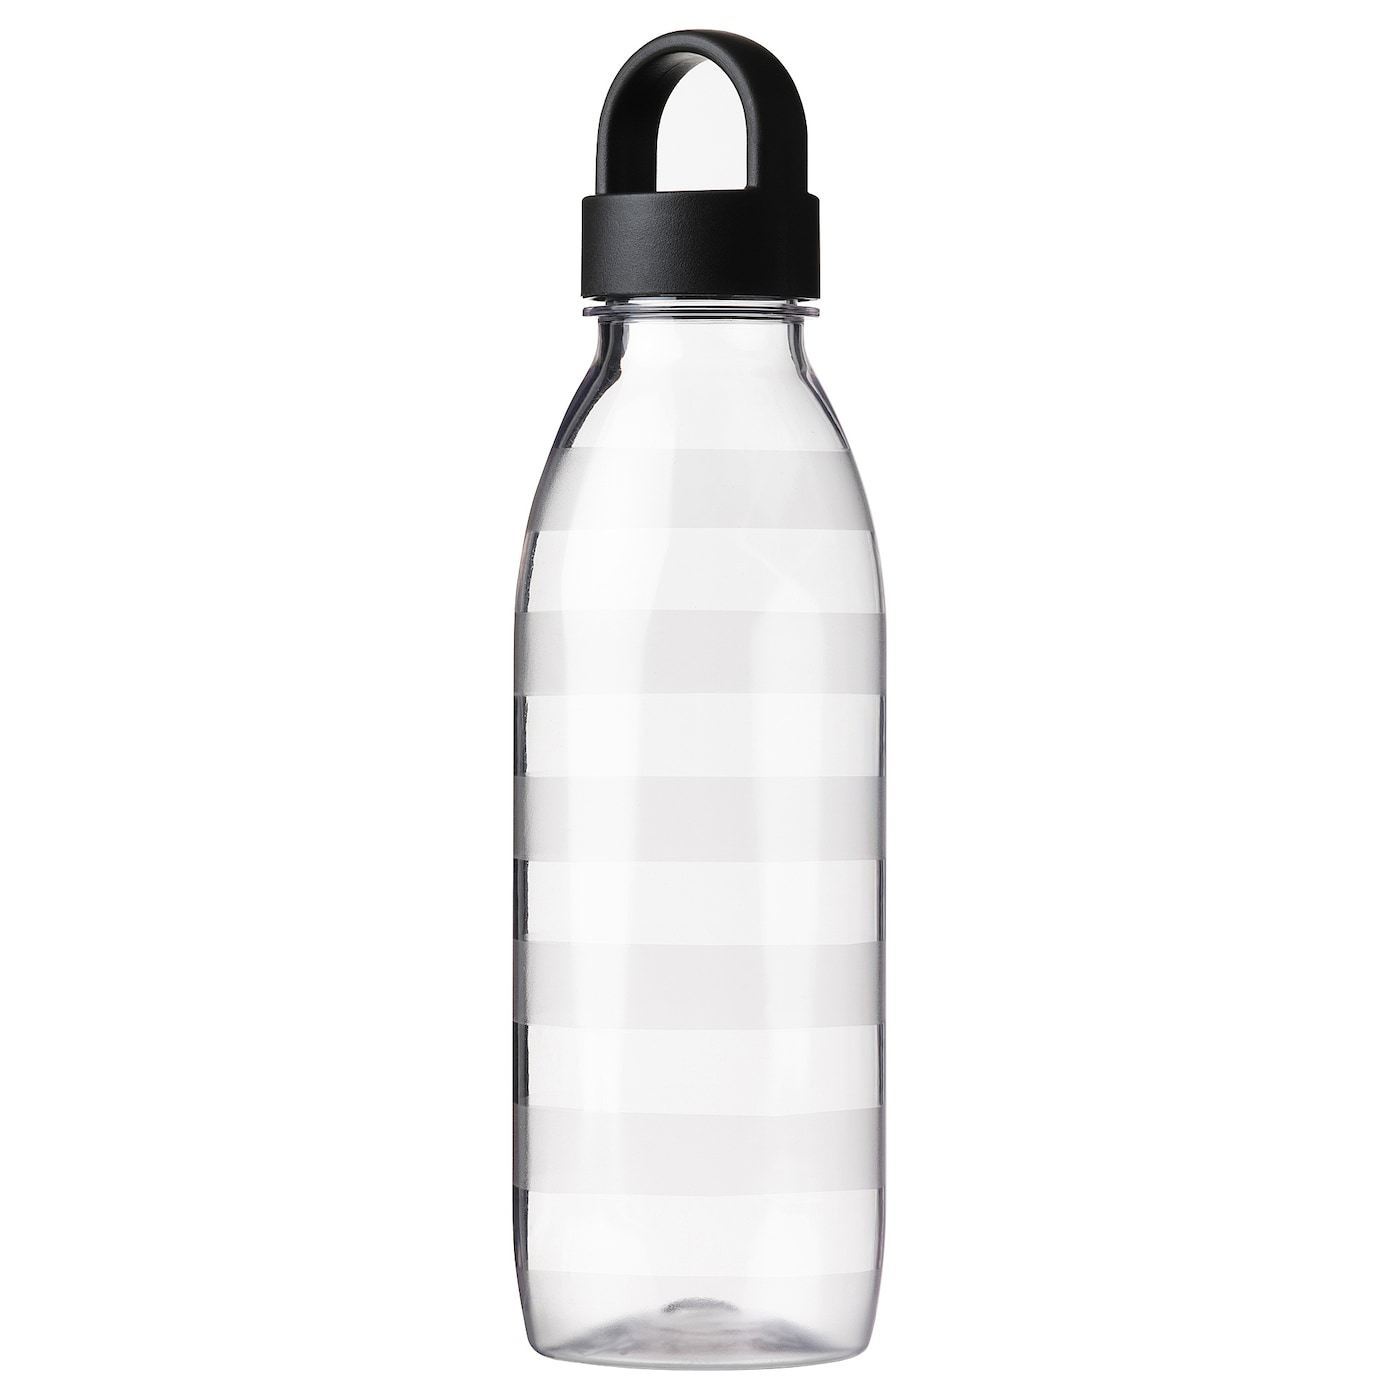 Бутылка с крышкой - IKEA 365+, 0.7 л, прозрачный/темно-серый, ИКЕА 365+